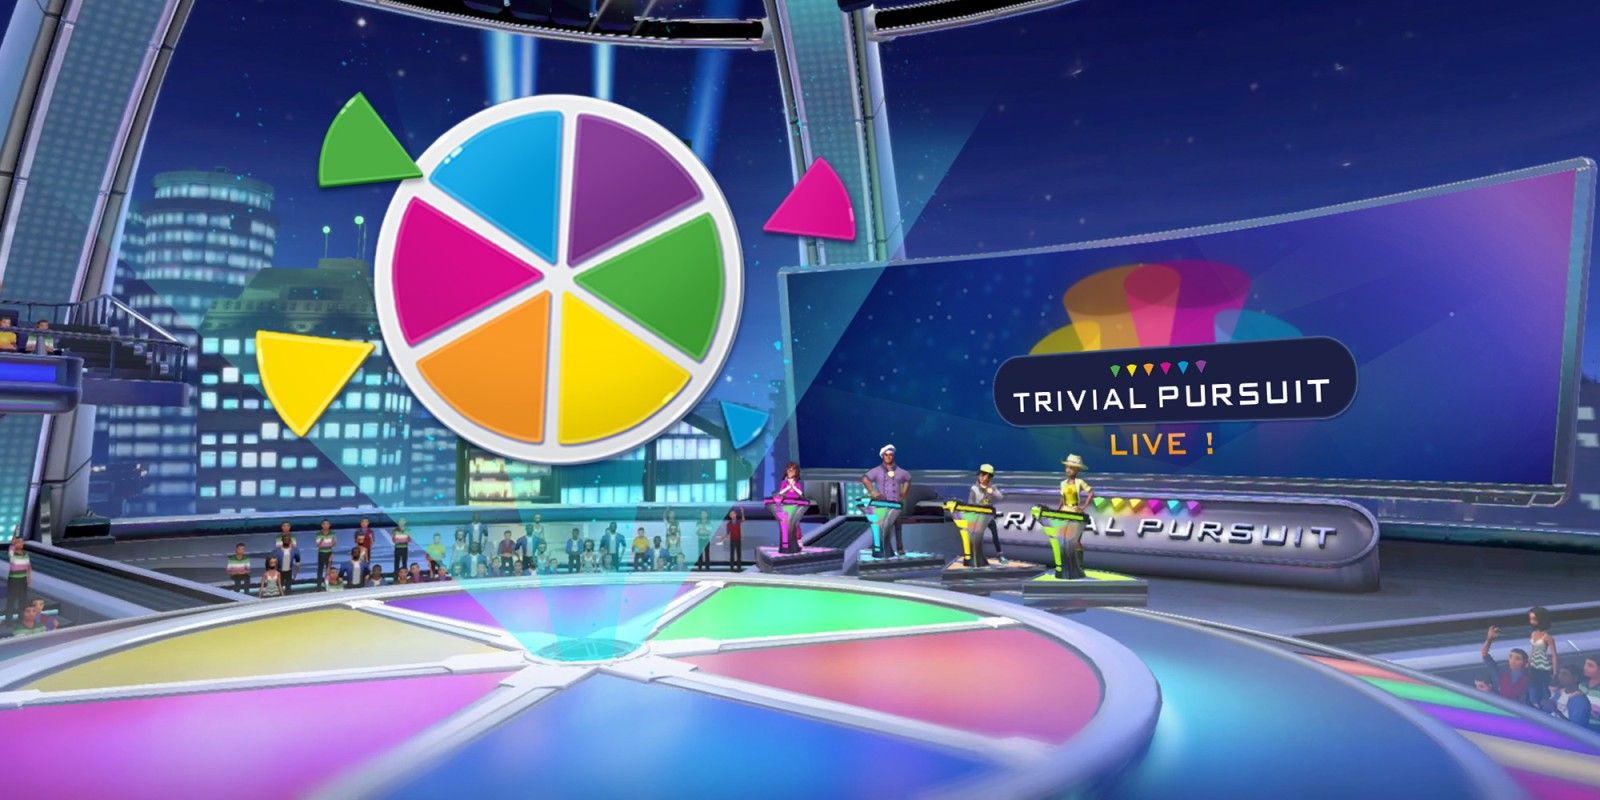 Trivial Pursuit Live gameshow set